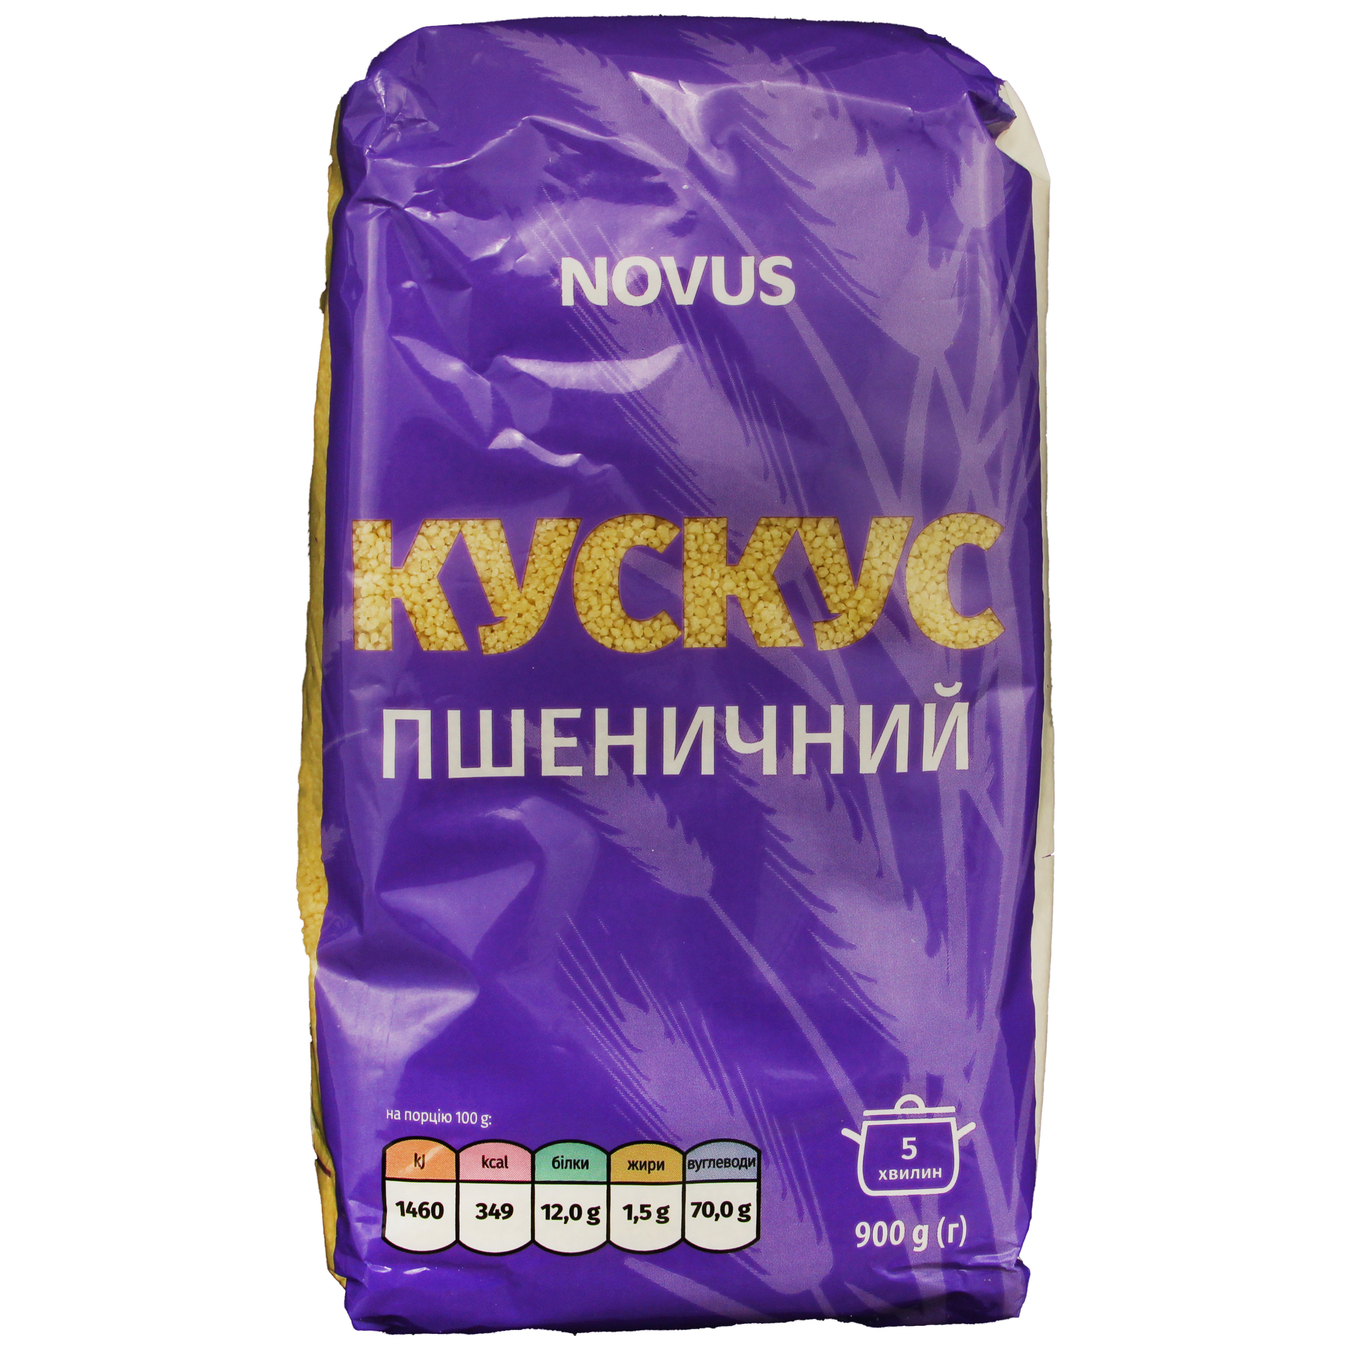 Novus Wheat Couscous 900g